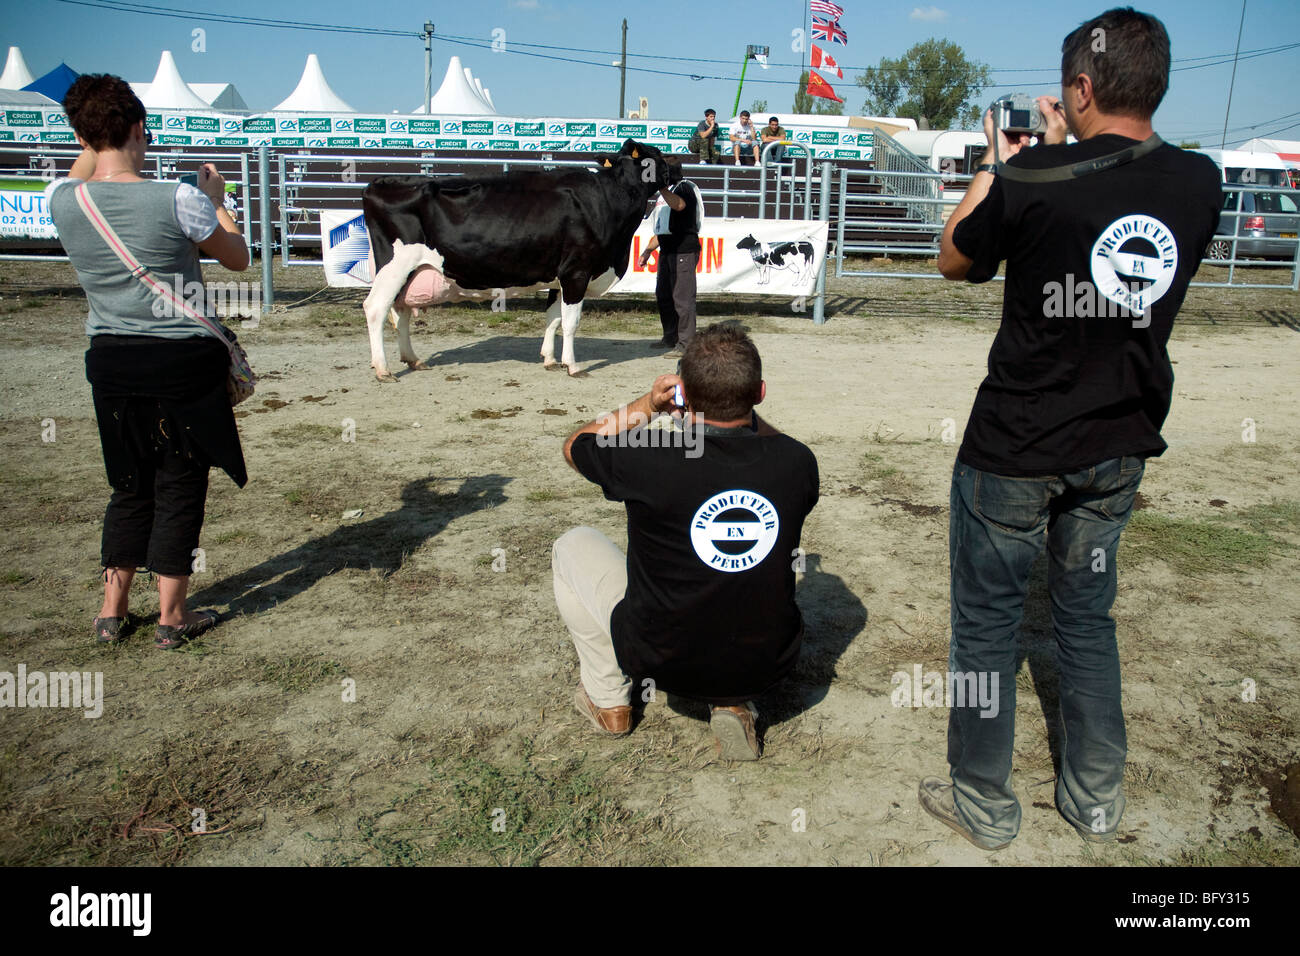 Les travailleurs français des produits laitiers dans la région de tee-shirts avec un slogan d'alarme commerce lait de photographier une vache Holstein primés lors d'une foire gasconne Banque D'Images